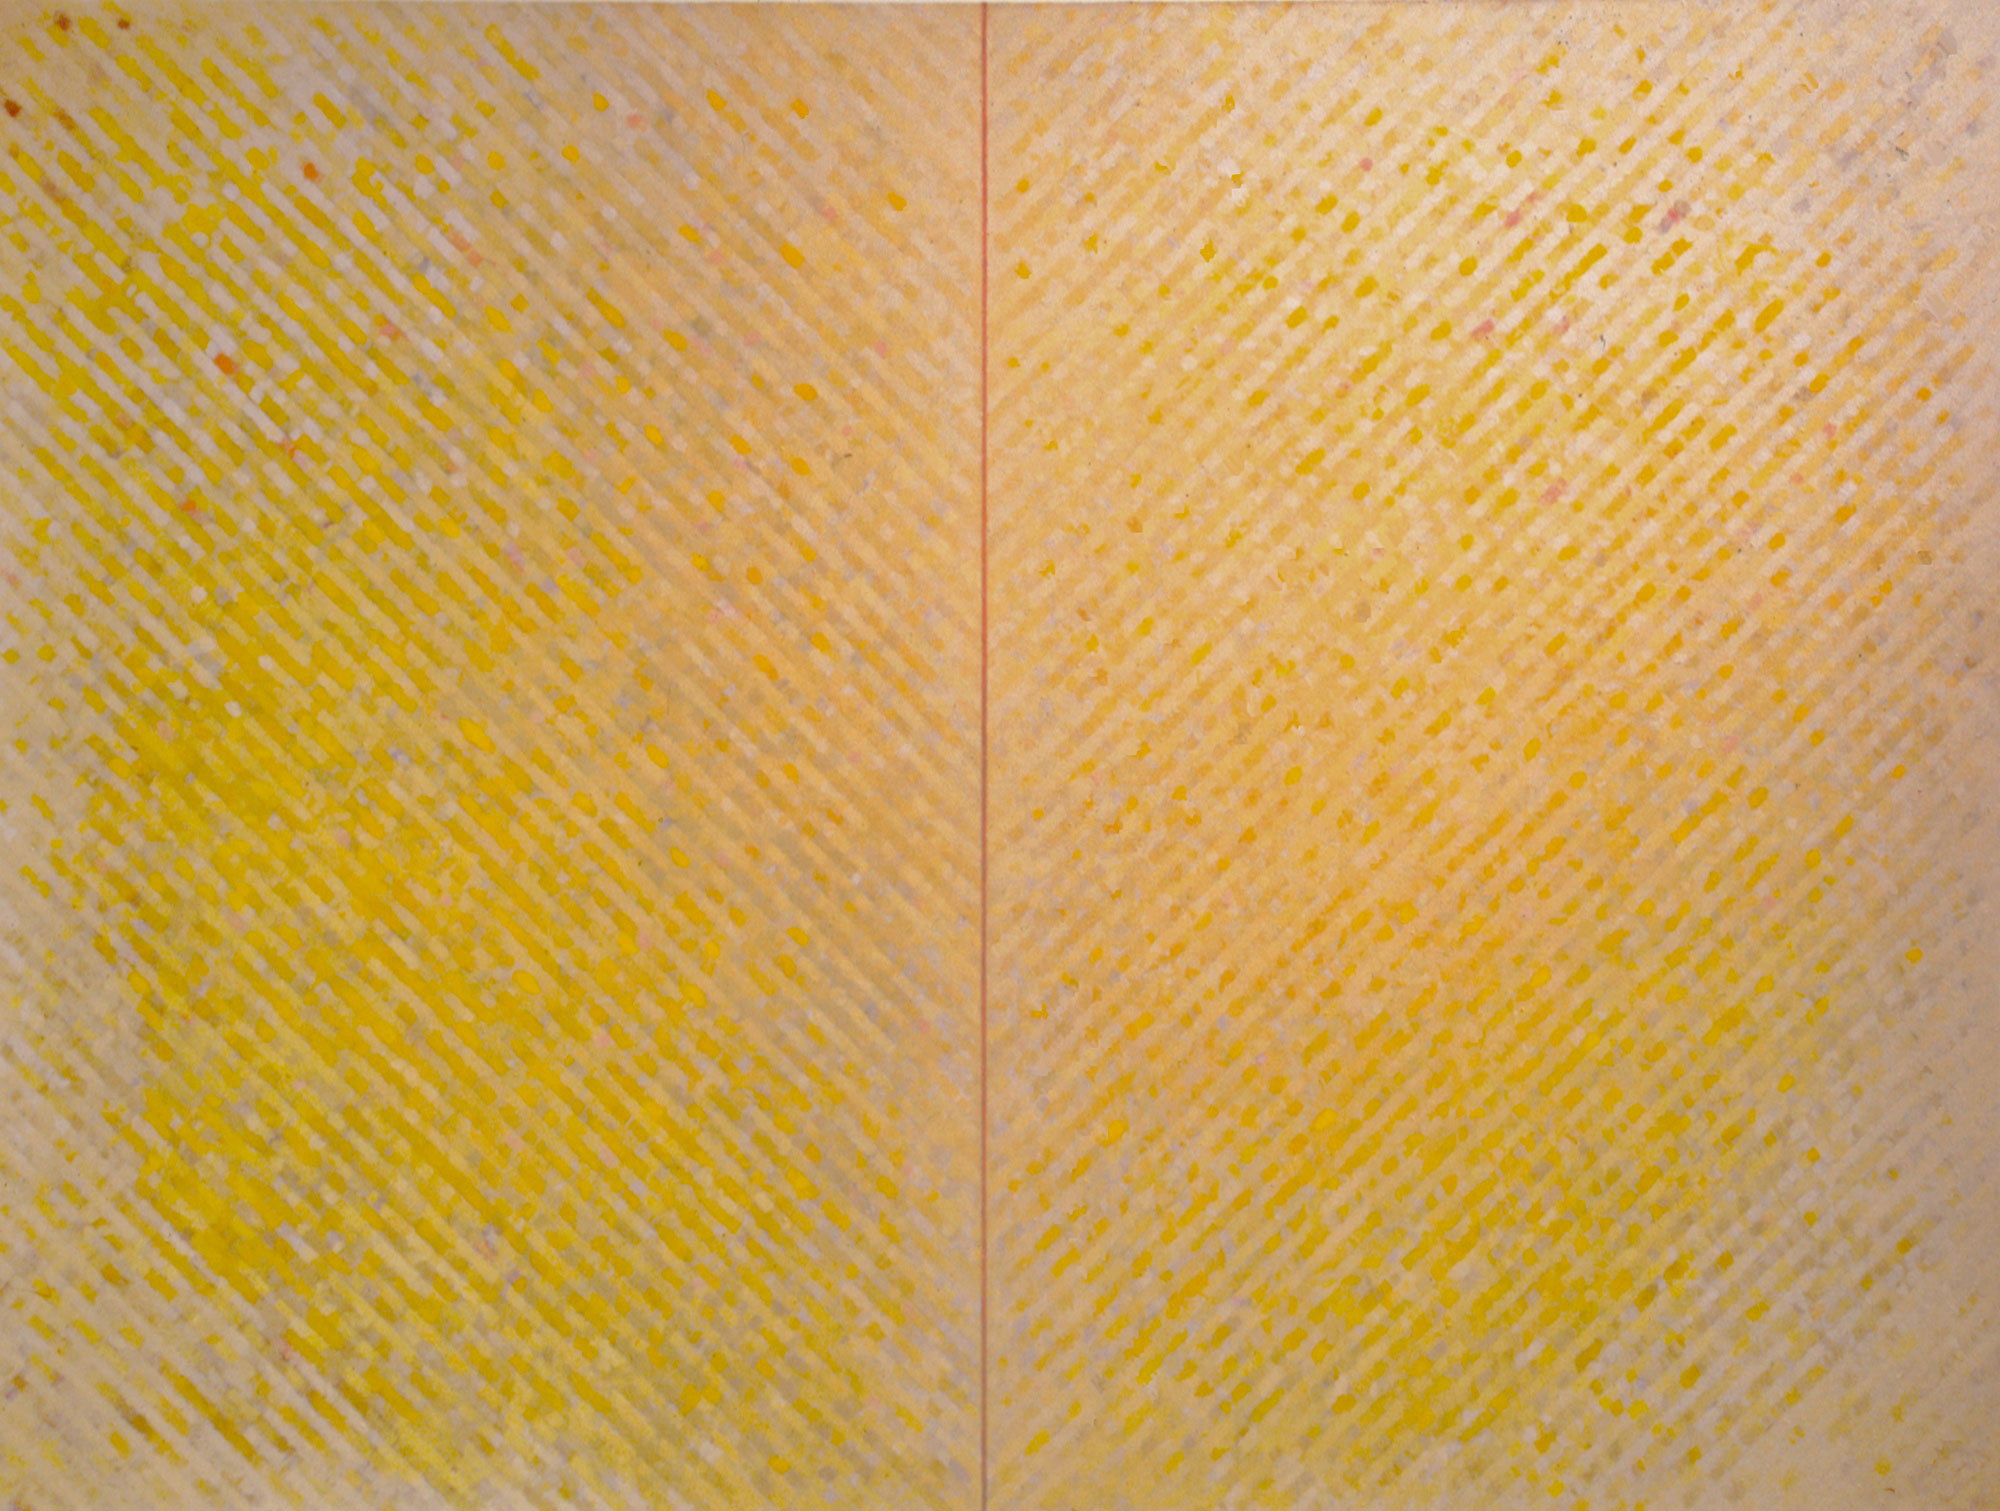 Kenneth Dingwall, Moment, 1996, oil on canvas, 160cm x 214cm